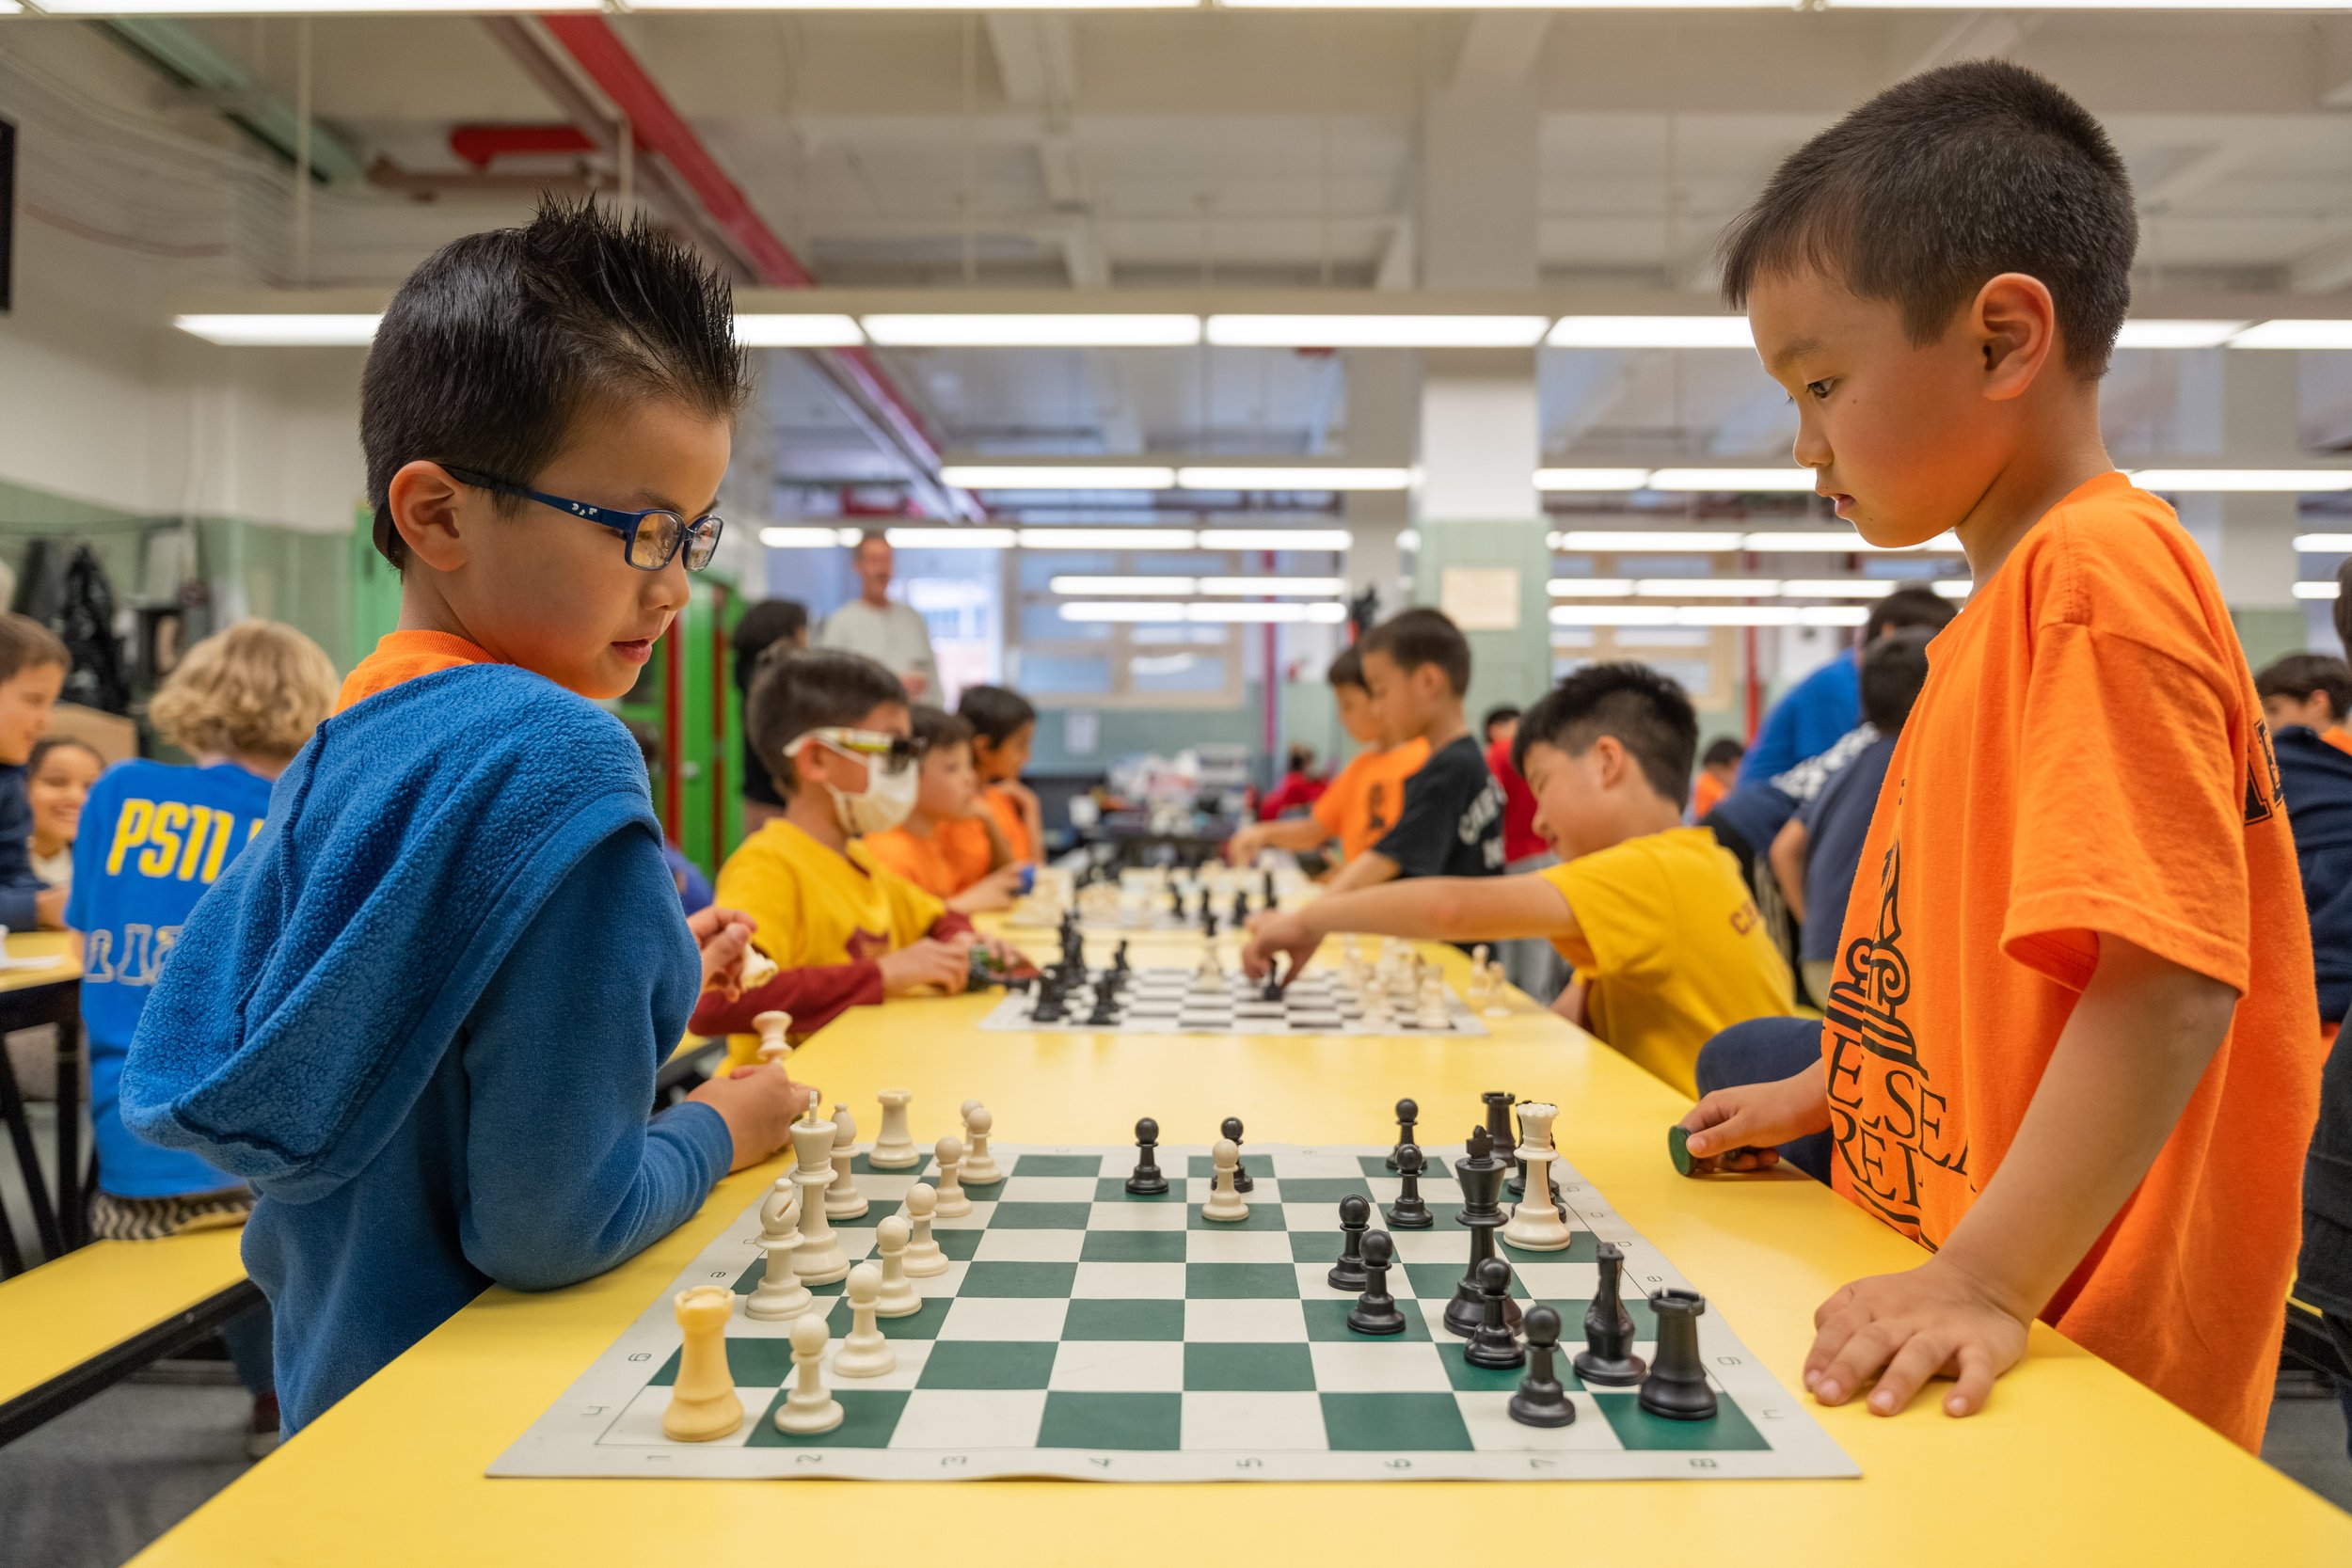 Chess Anyone?  Marshall Lane Elementary School